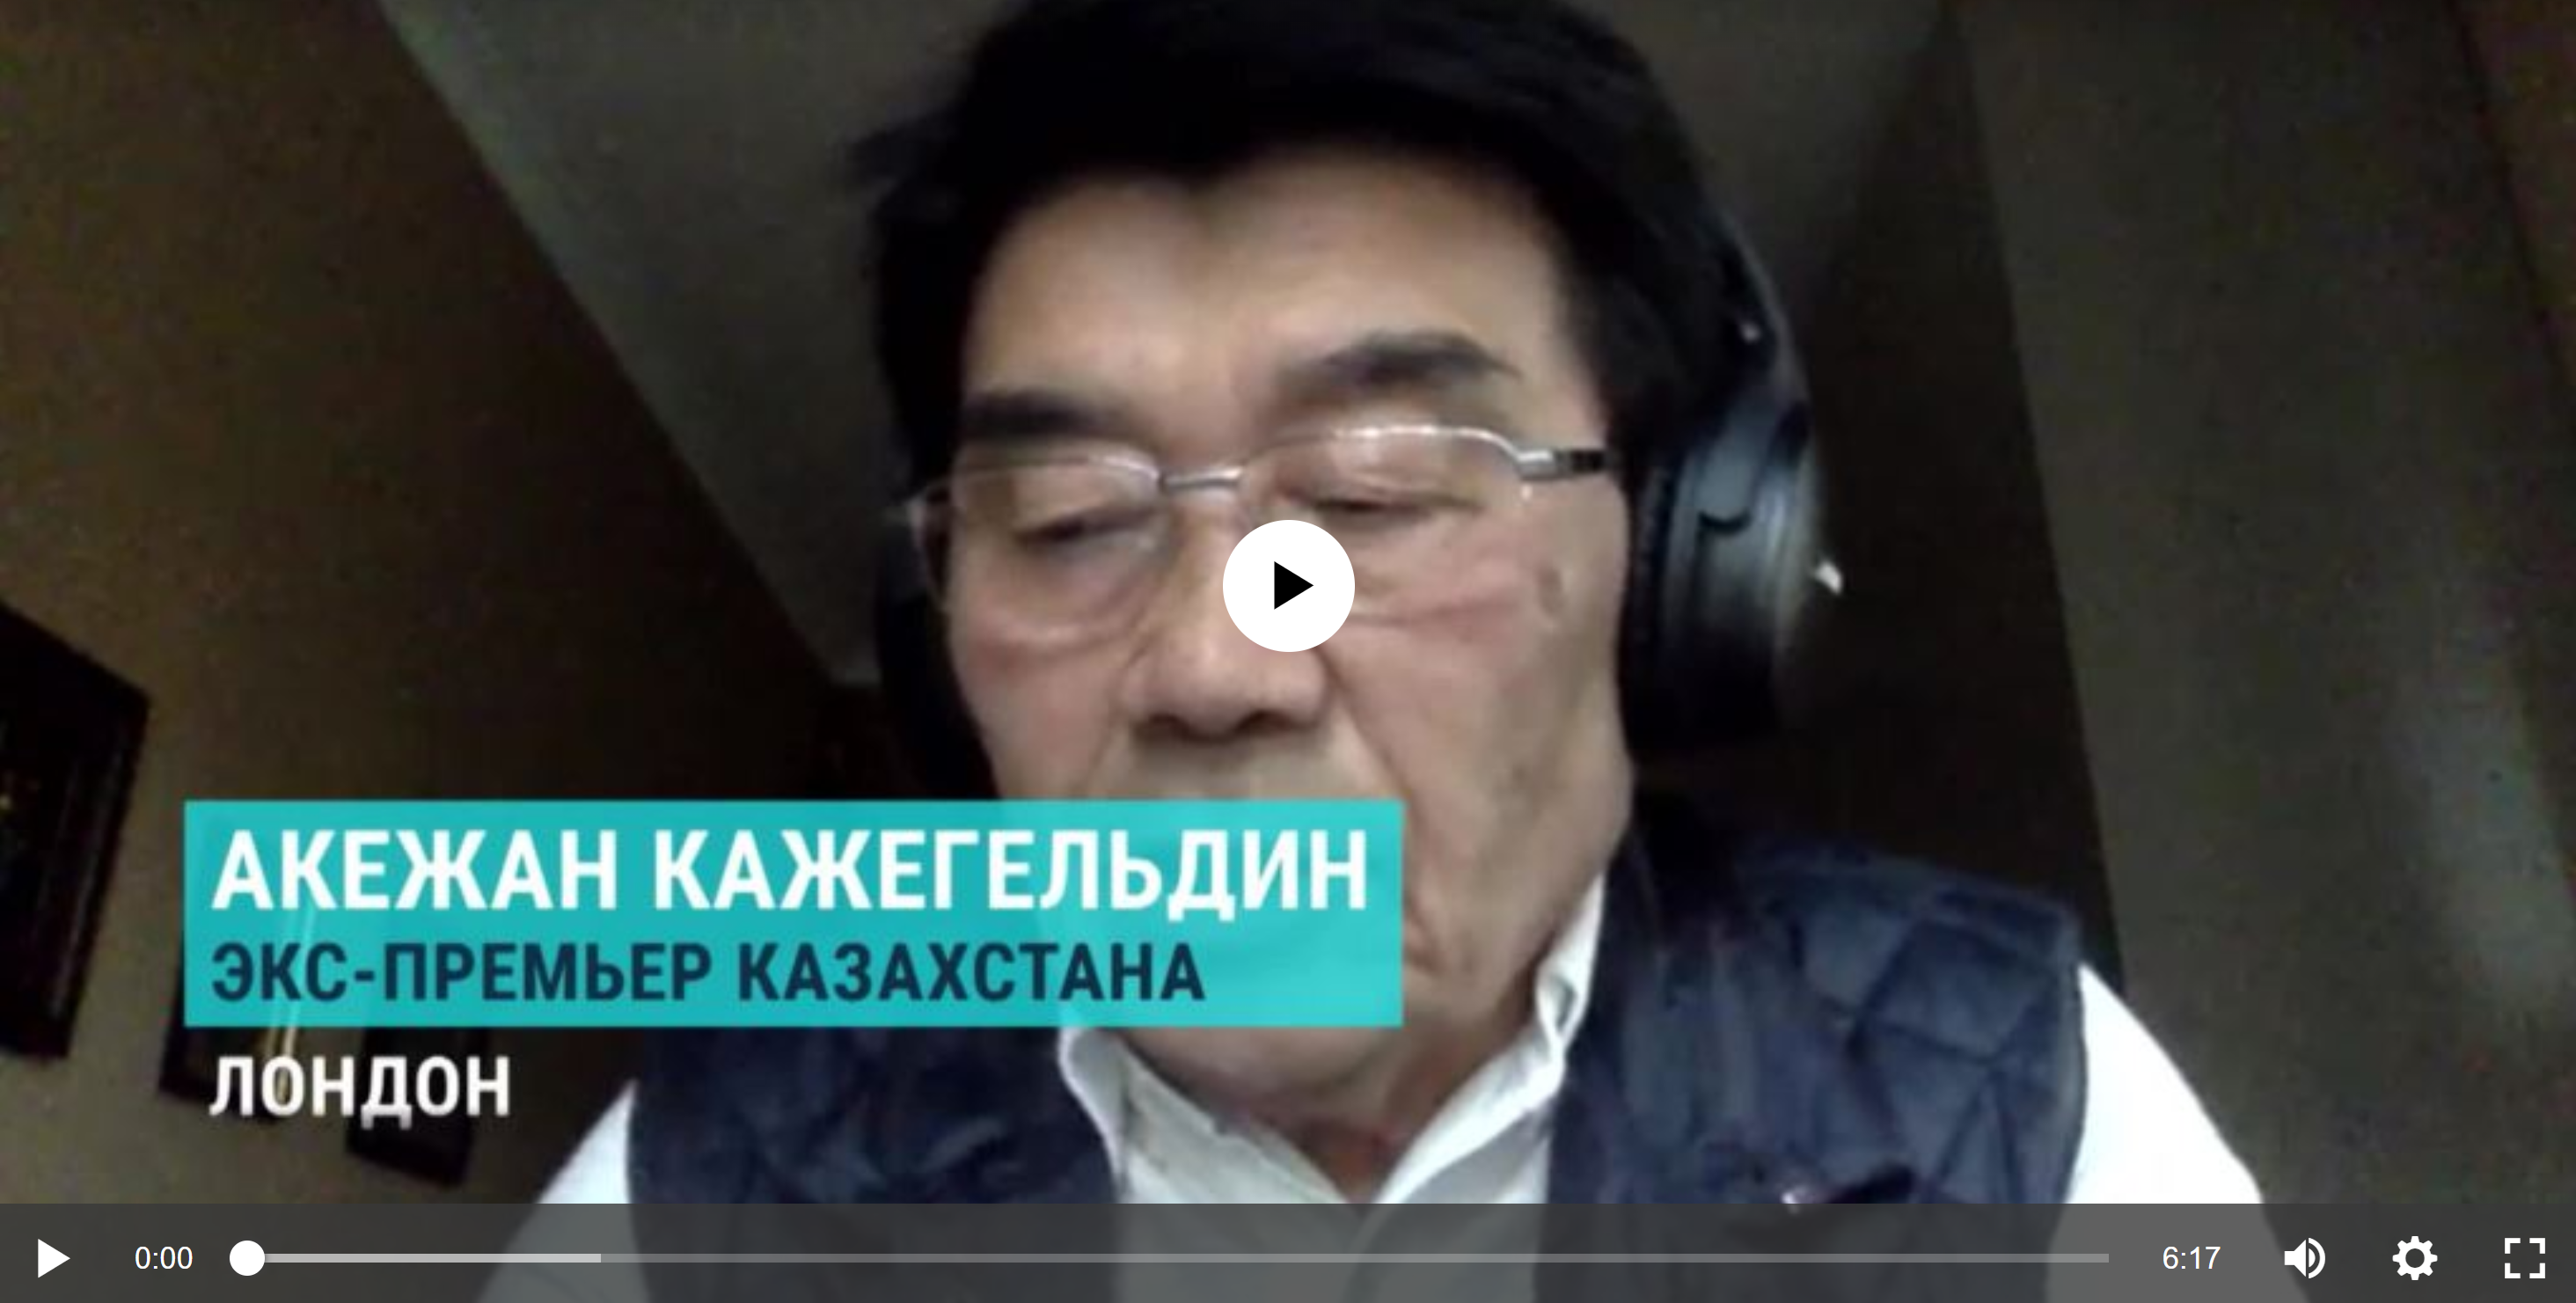 Бывший премьер-министр Казахстана Акежан Кажегельдин об итогах выборов